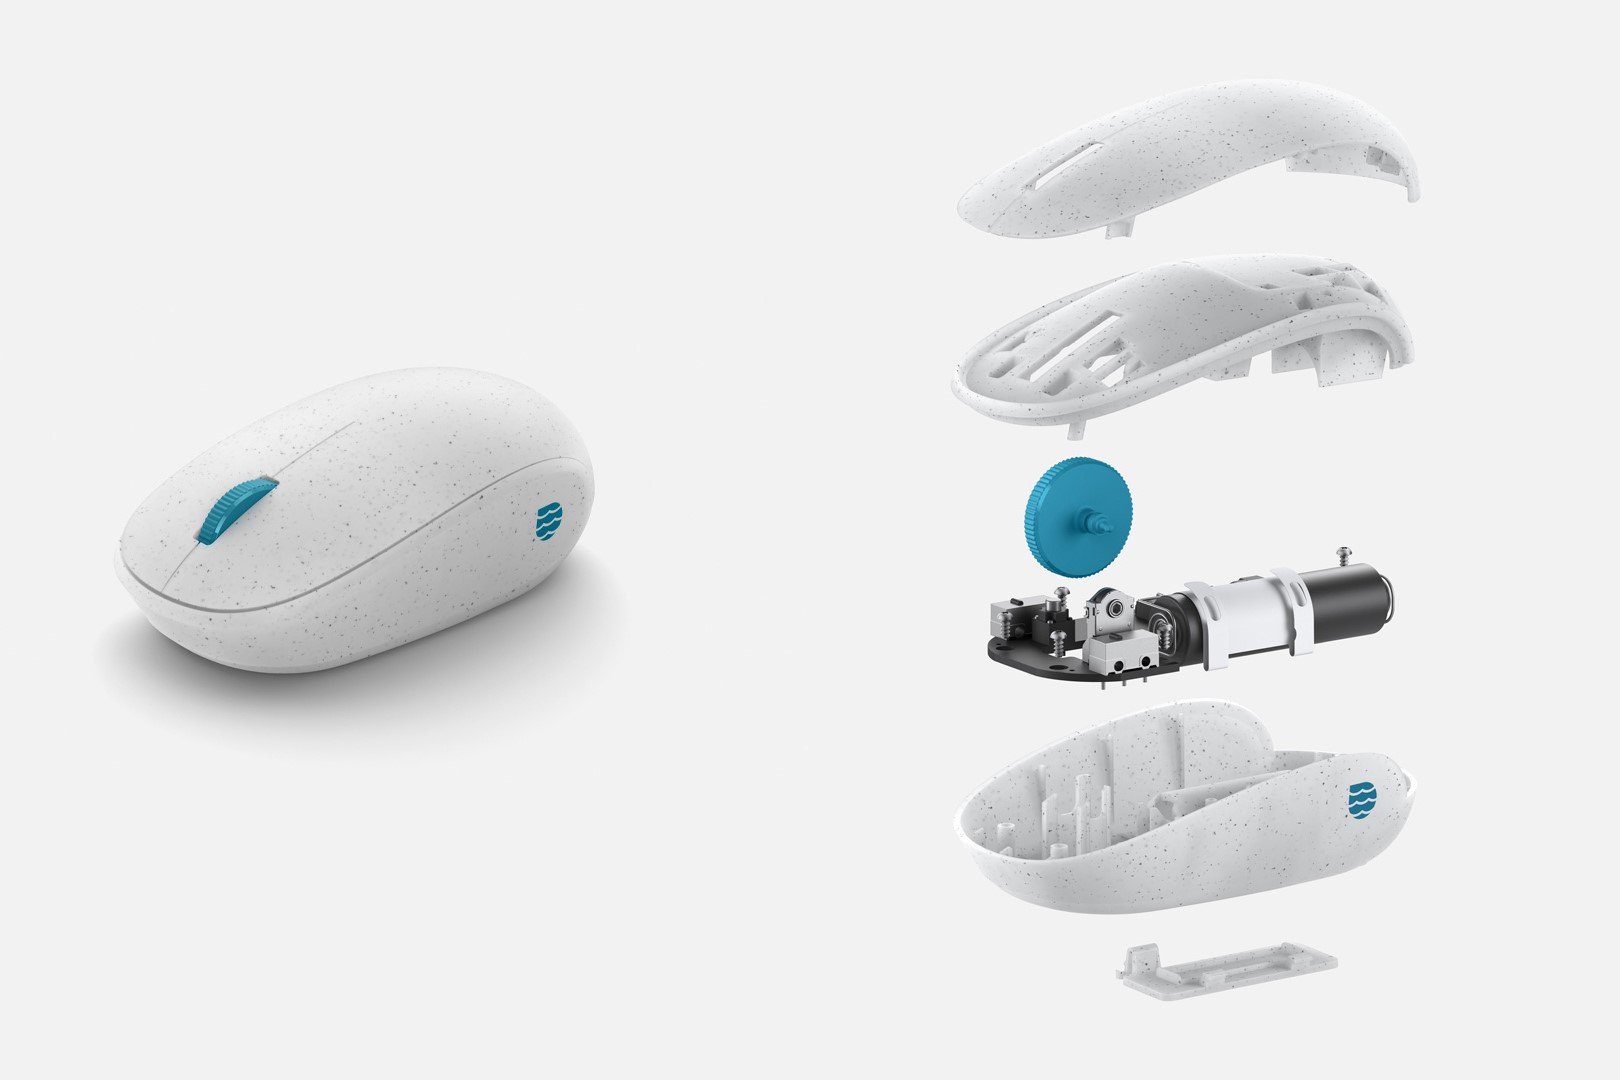 微軟海洋滑鼠可透過藍牙連接，還可自訂按鍵及滾輪的功能，為日常或工作使用再創效率高峰